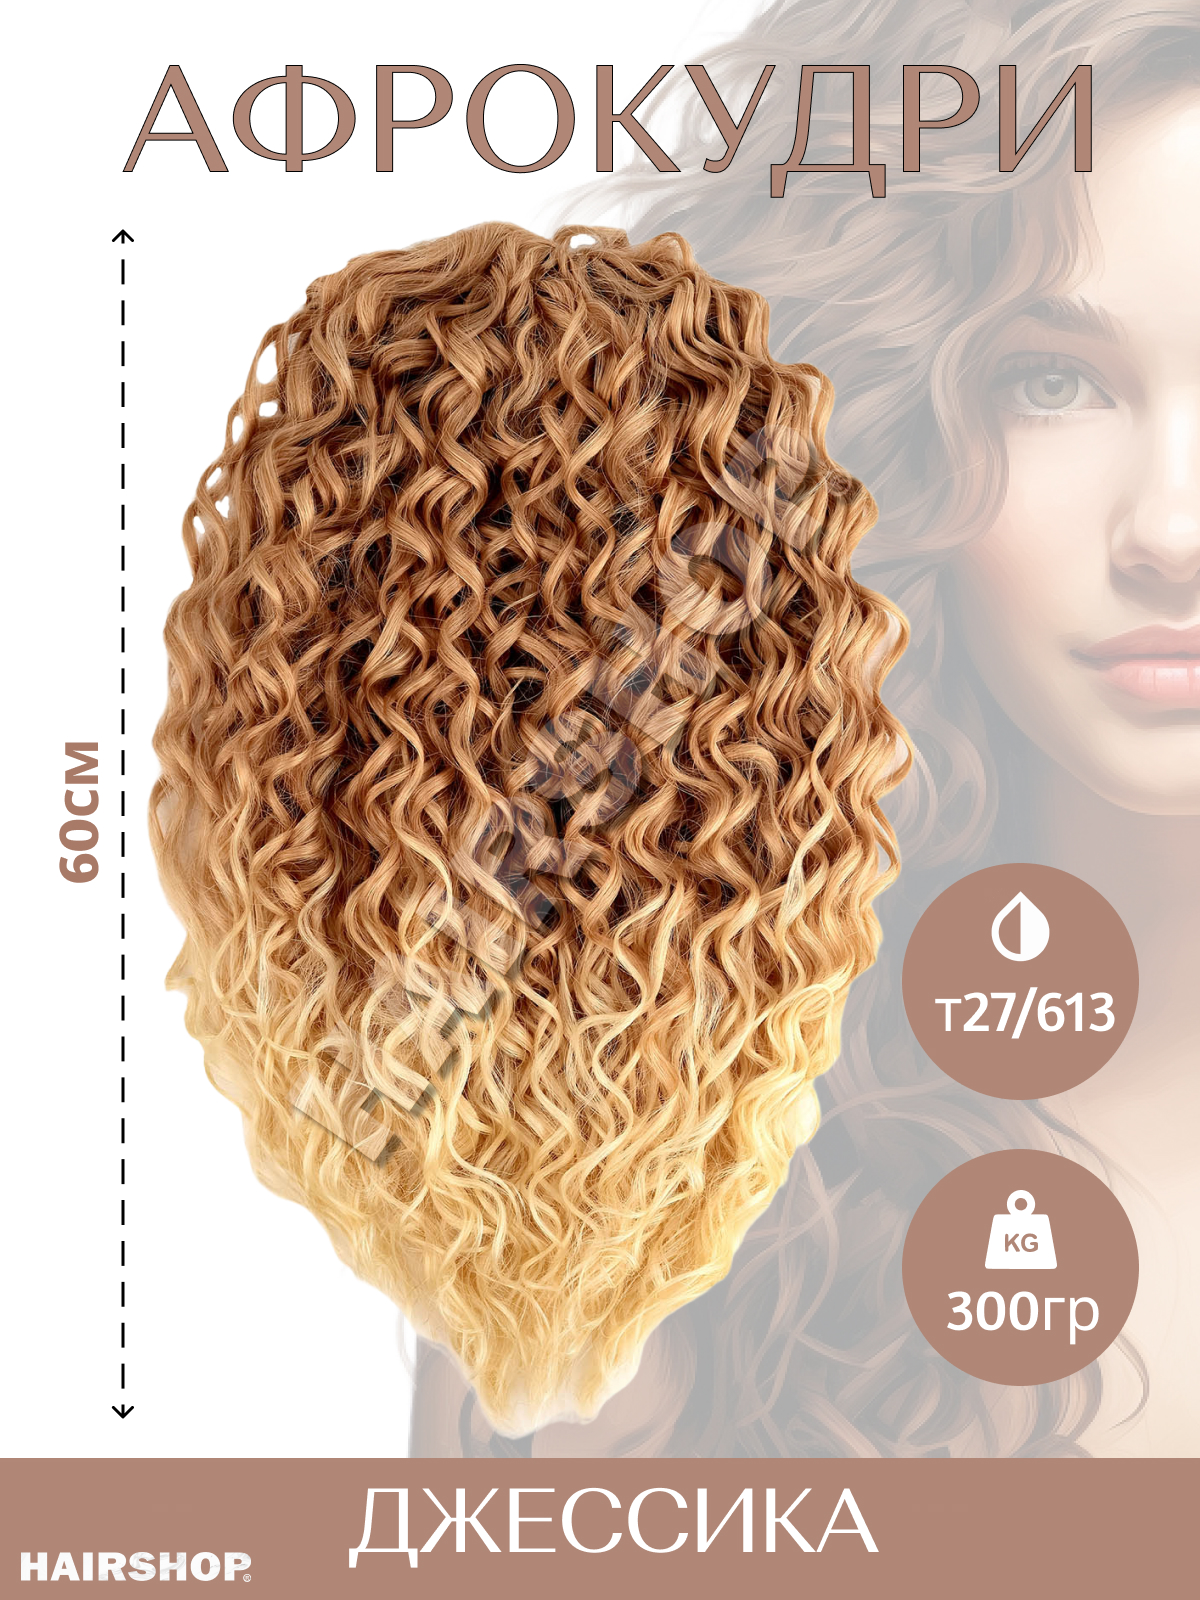 Волосы для наращивания HAIRSHOP Джессика T27/613 коричнево-рыжий с переходом в блонд 60см джессика джонс элиас том 3